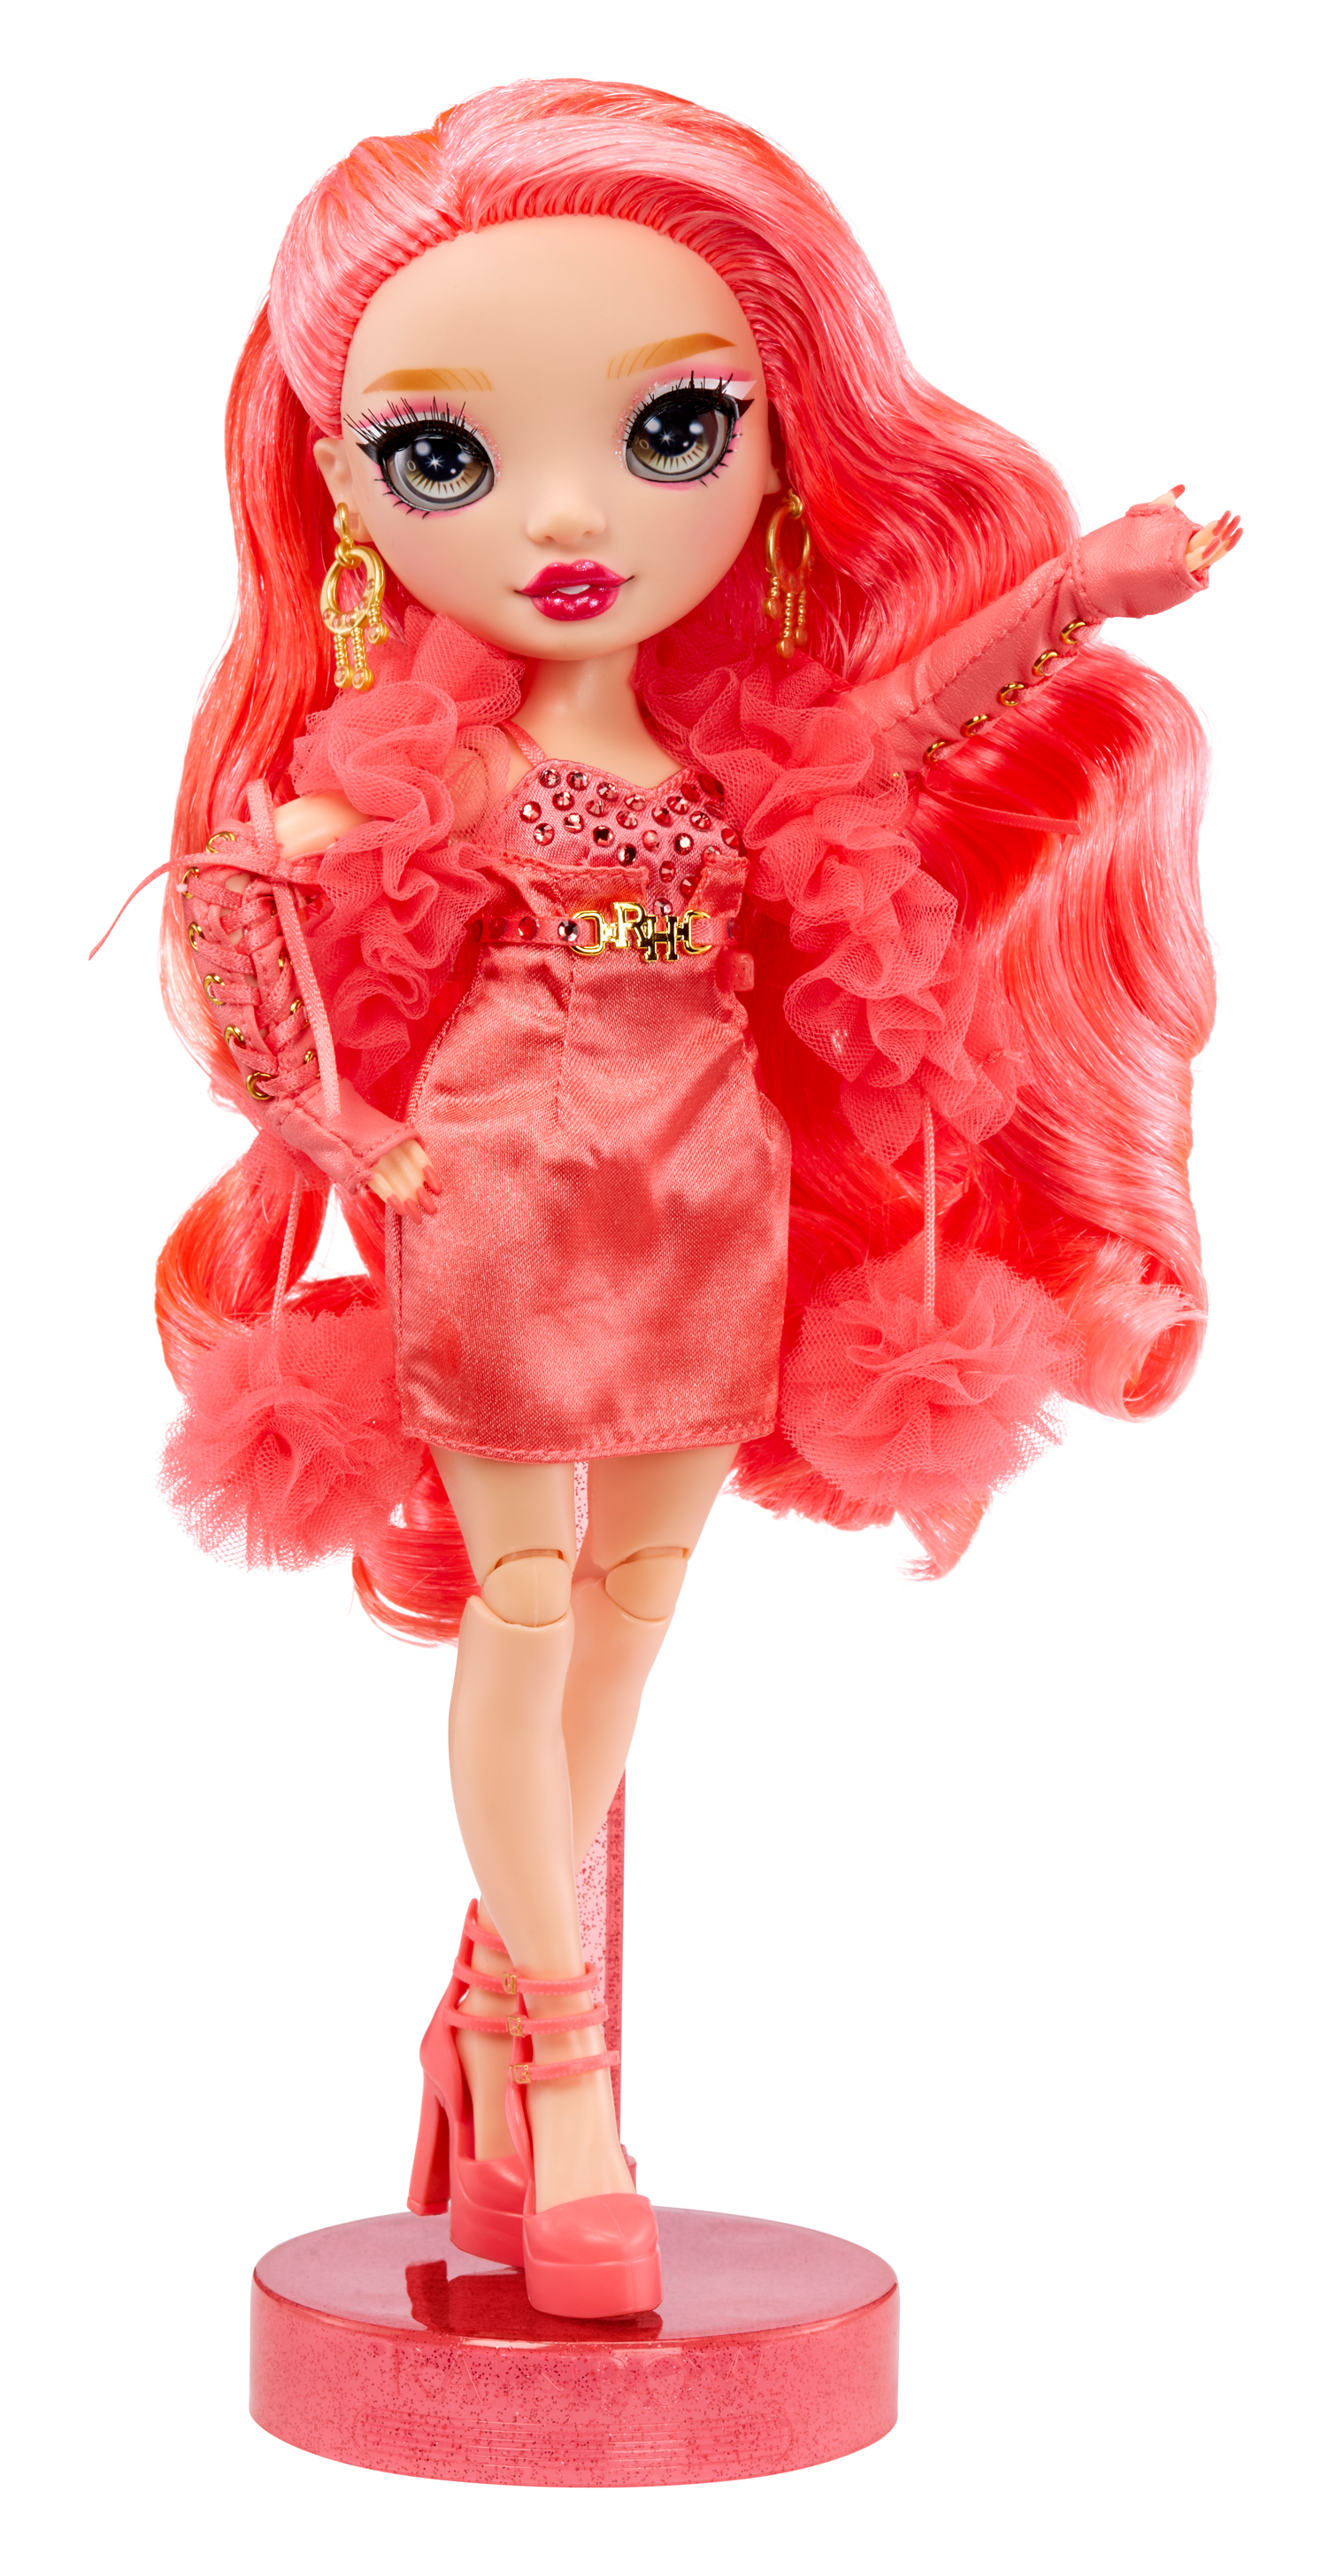 Rainbow high fashion doll serie 5: priscilla perez. bambola rosa con vestito alla moda e oltre 10 accessori di gioco colorati - Rainbow High